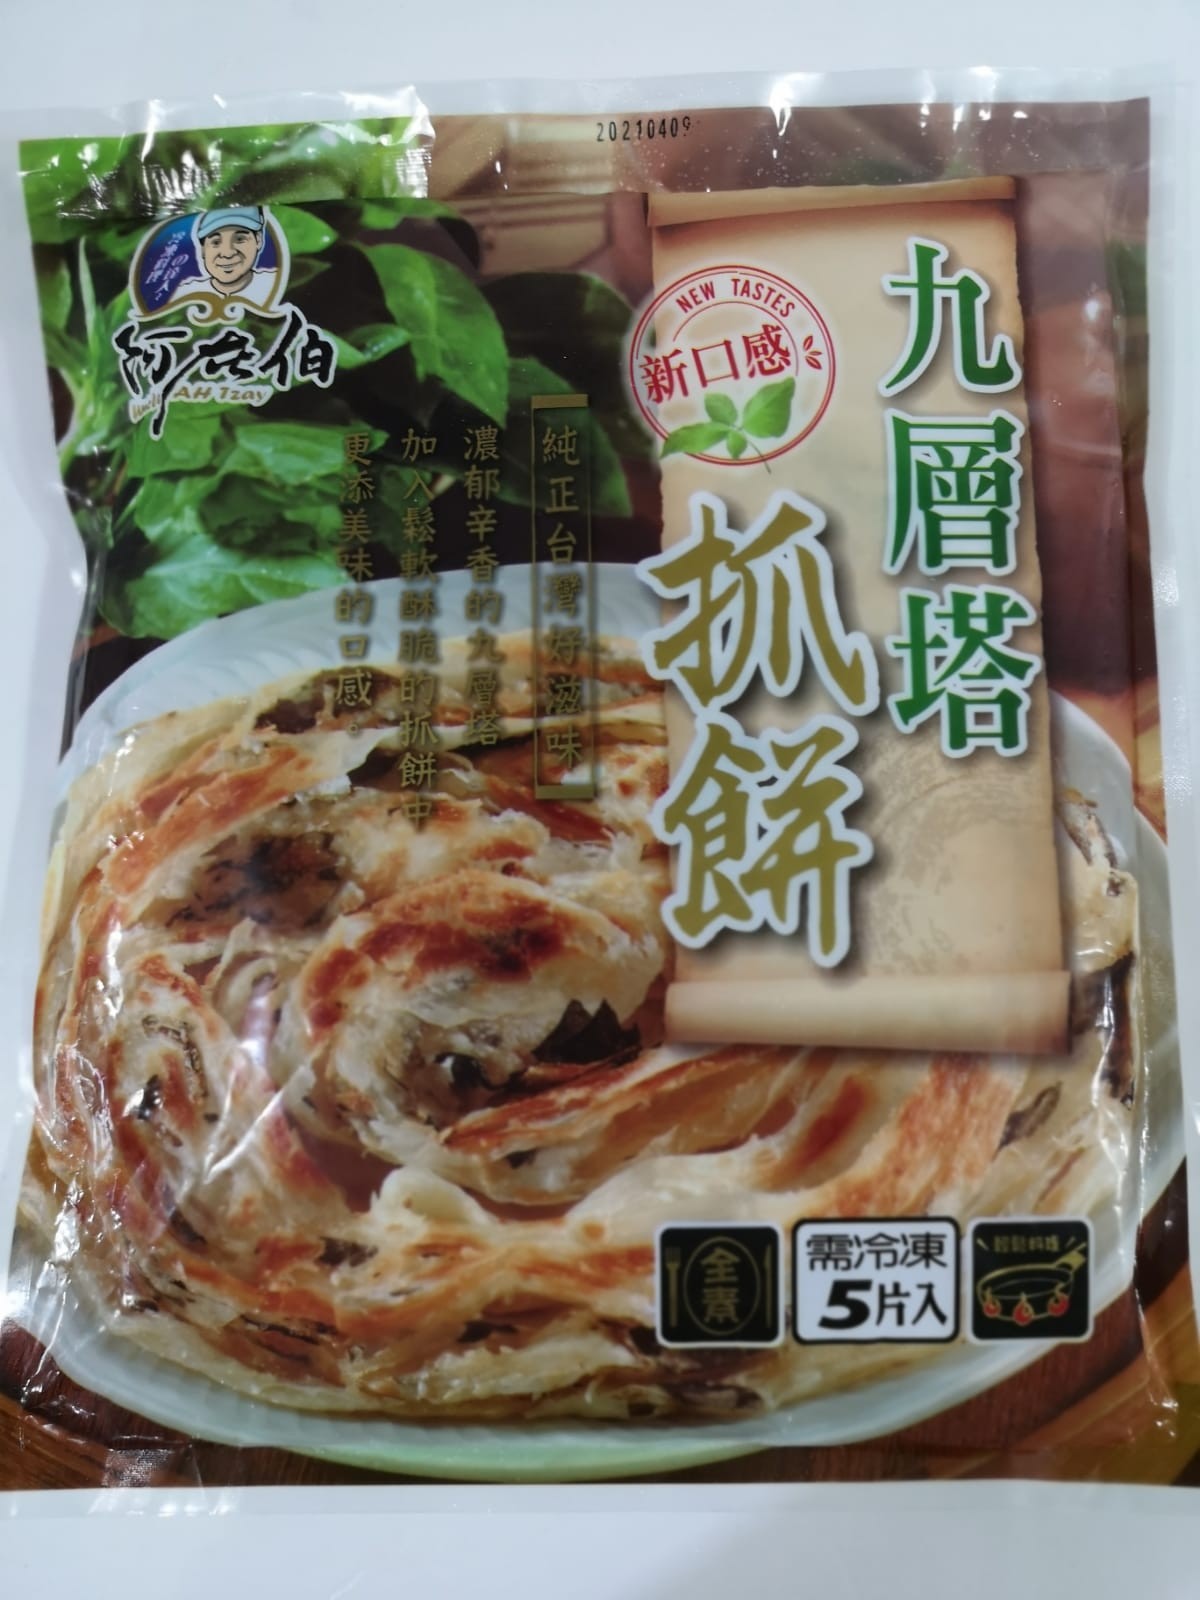 台灣九層塔抓餅(5片裝) 可煎平烘熱加咖哩等食法